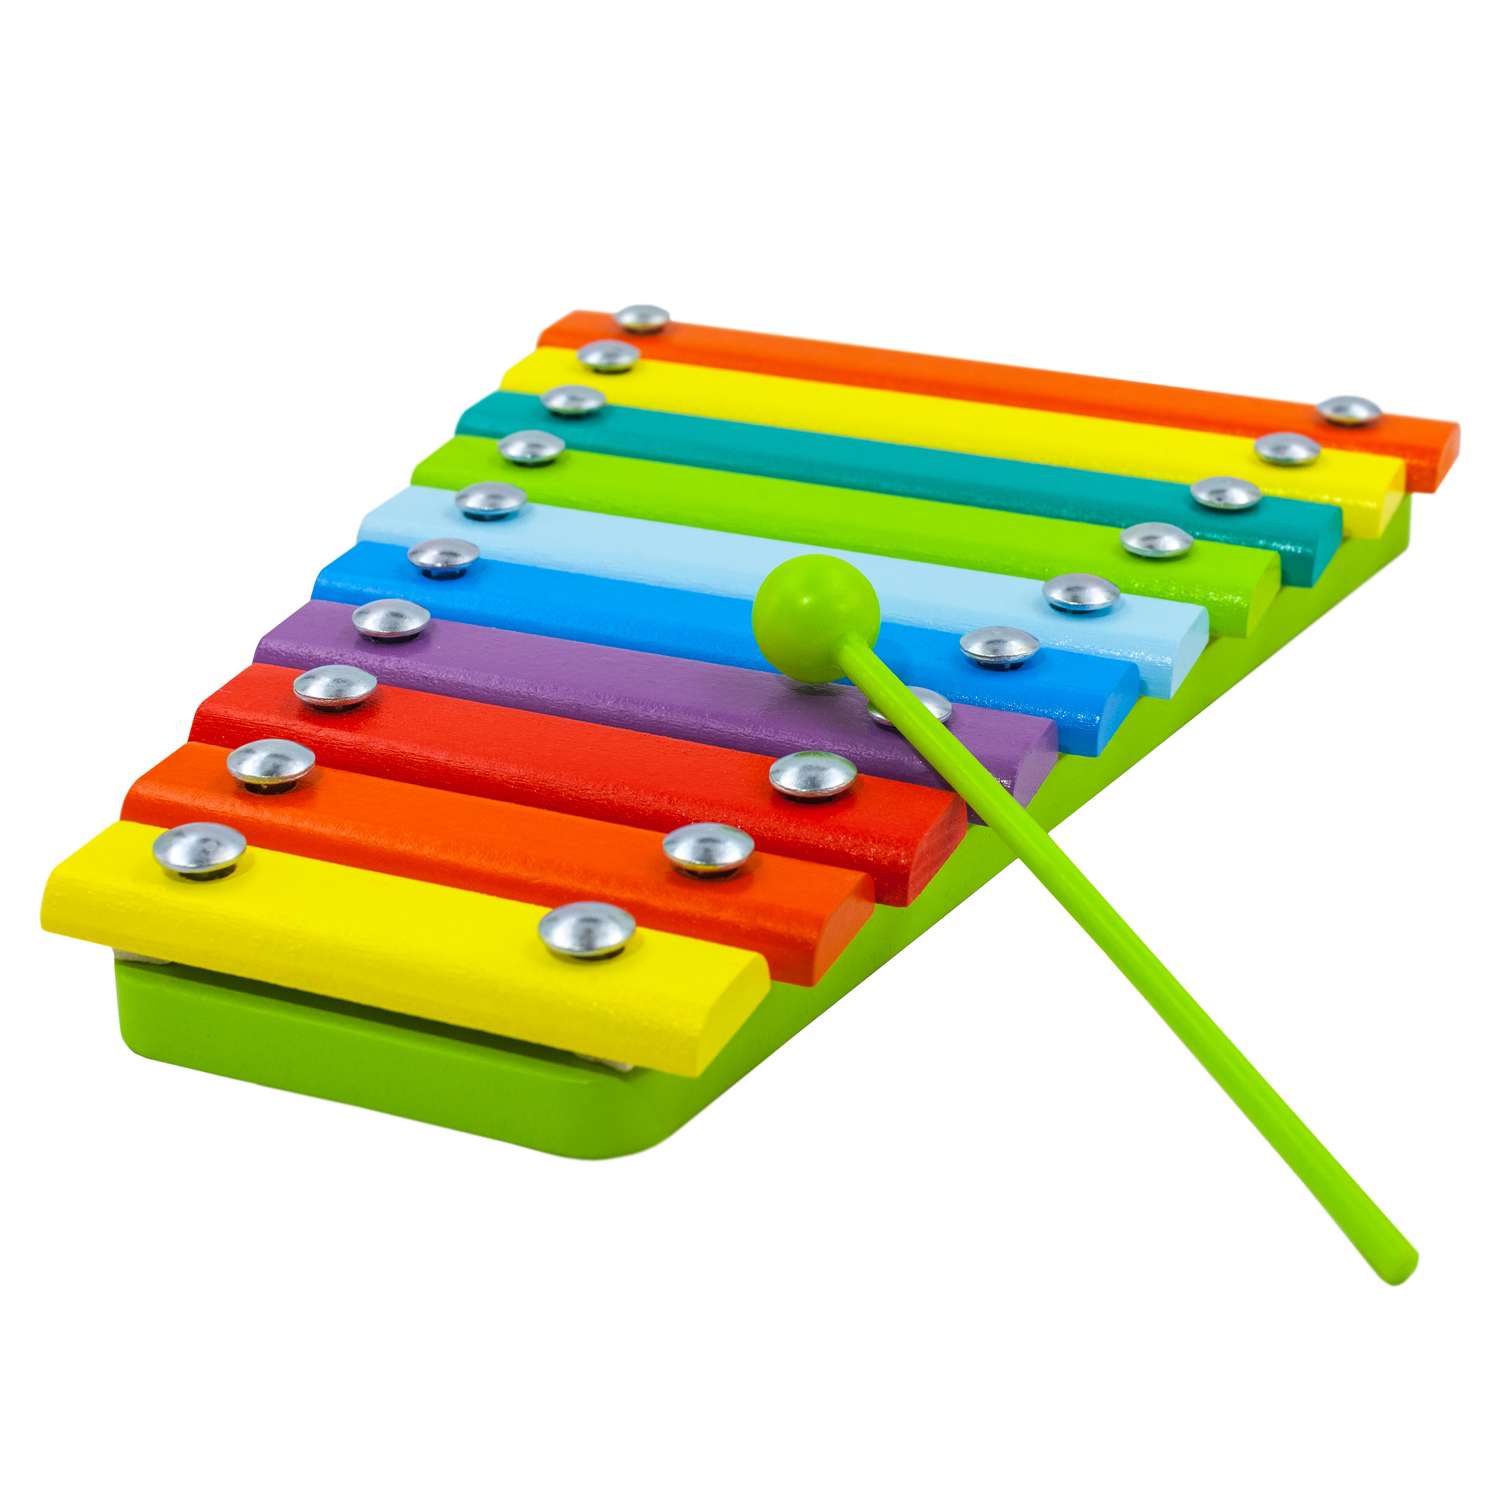 Ксилофон цветные ступеньки Alatoys 10 планок + гайд с играми - фото 11